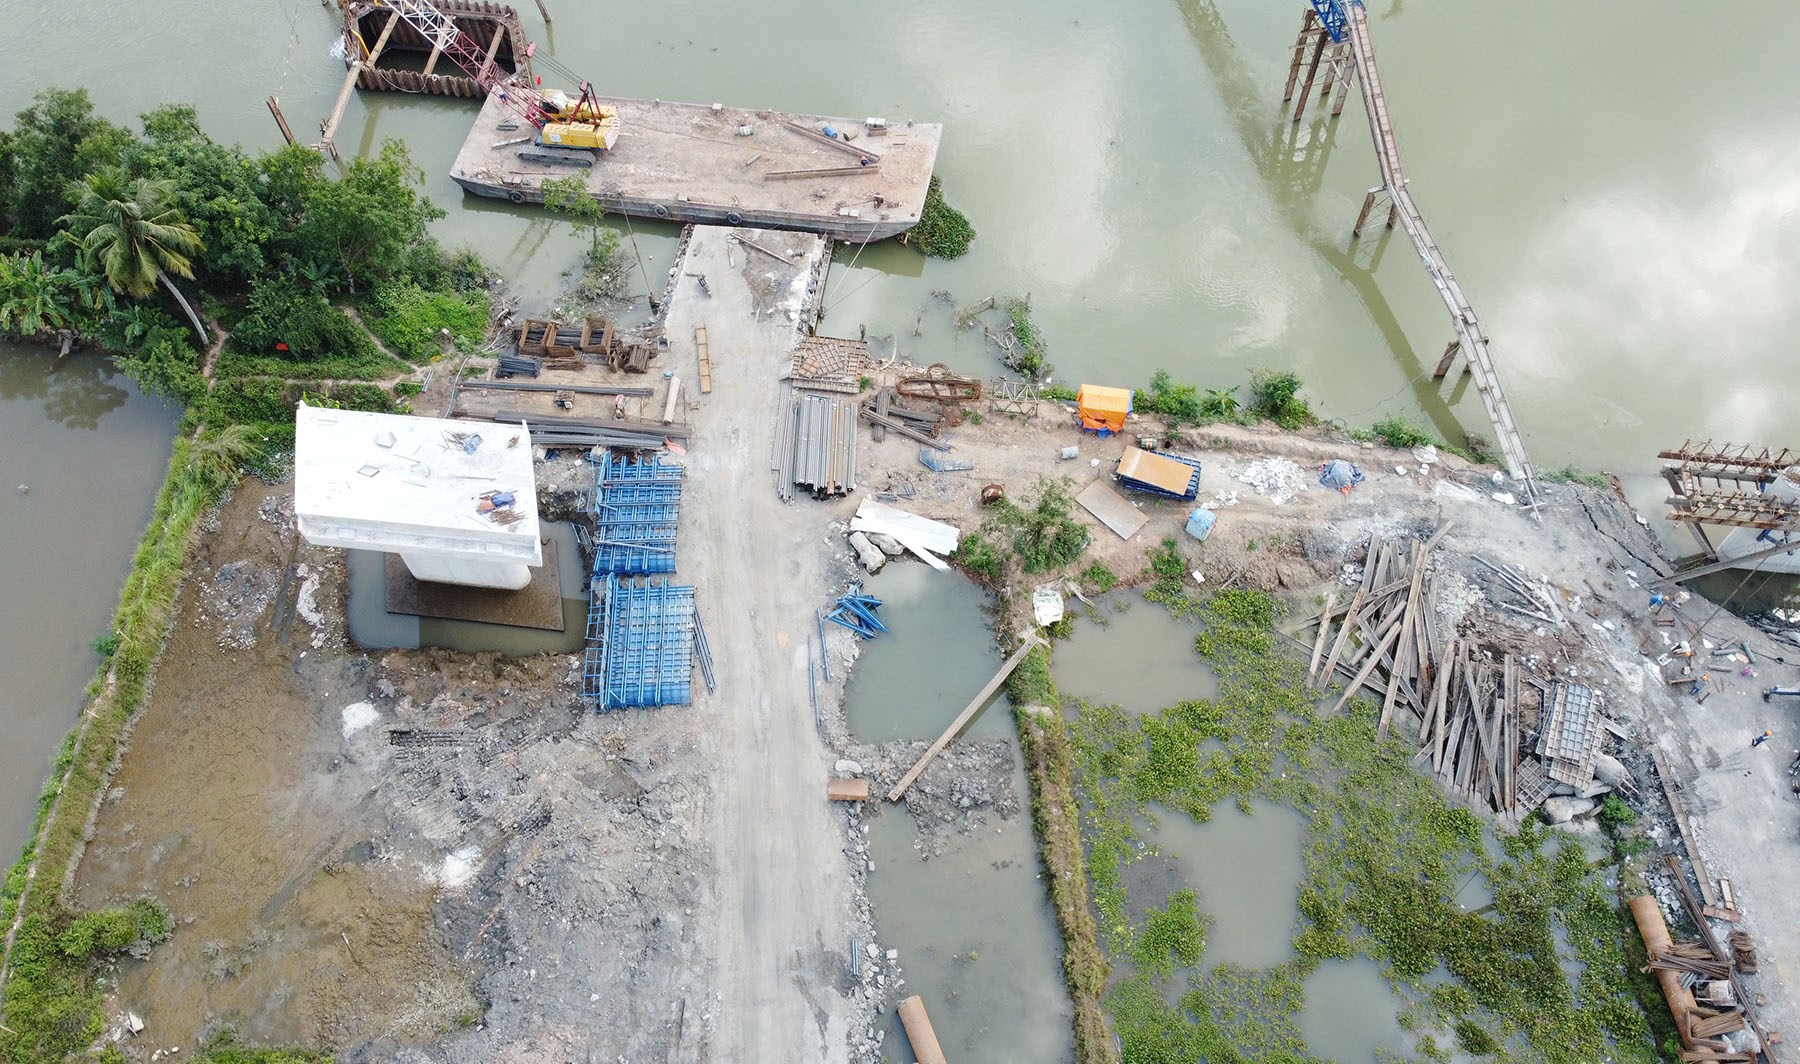 Hình ảnh cầu vượt sông Cầm ở thị xã Đông Triều, Quảng Ninh đang xây dựng